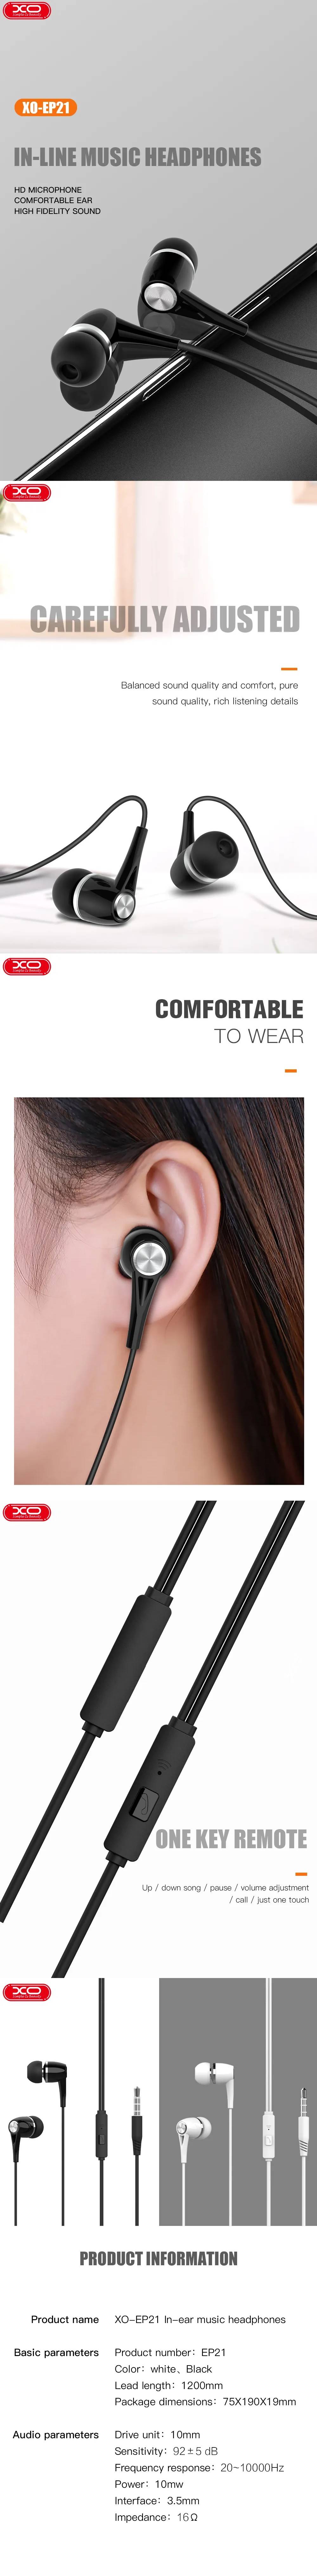 XO vezetékes fejhallgató EP21 jack 3,5 mm-es fülbe helyezhető fekete